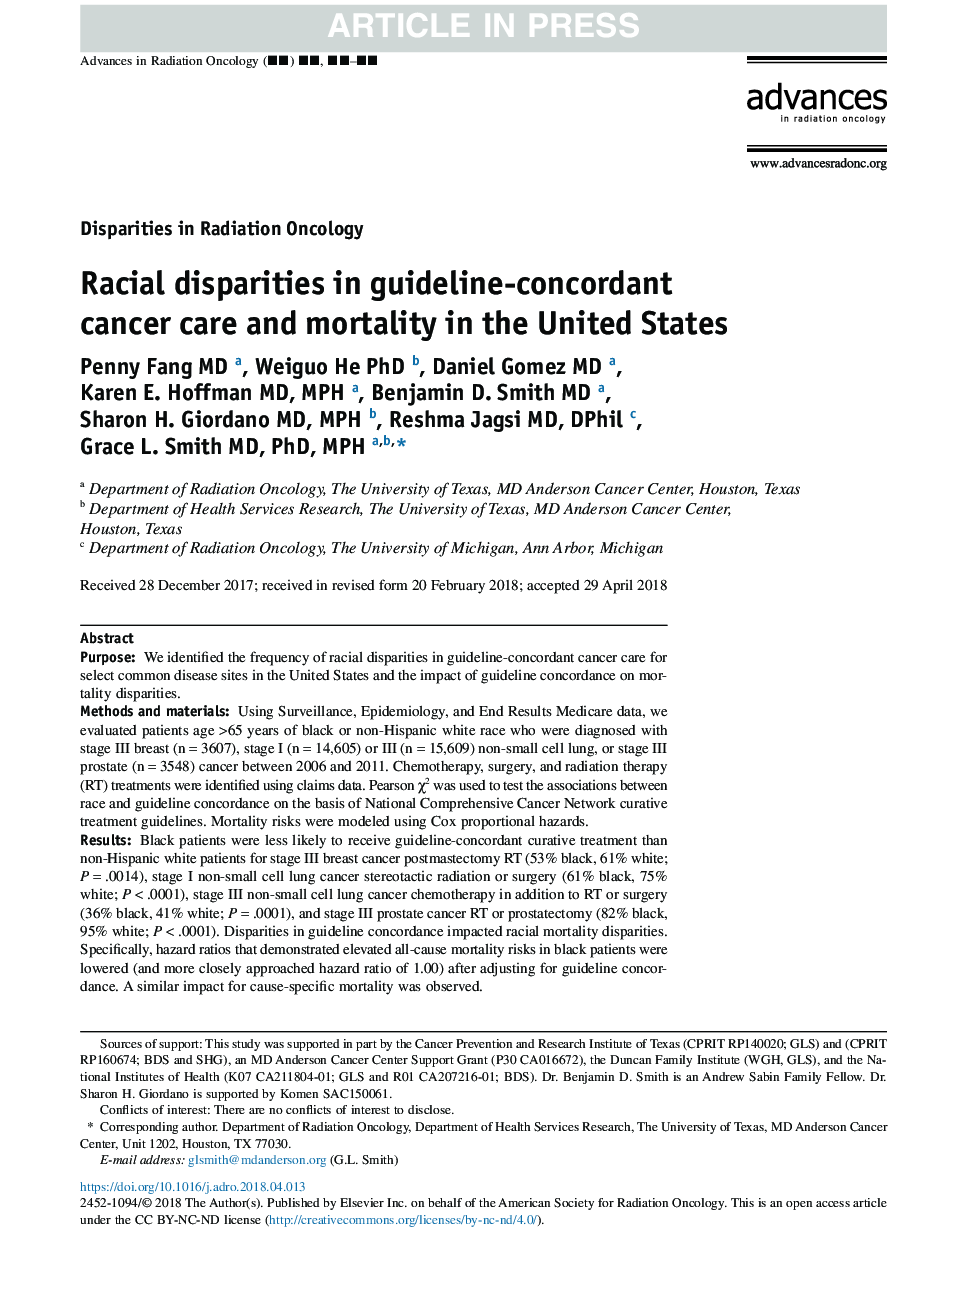 اختلافات نژادی در مراقبت های سرطانی مربوط به سرطان و مرگ و میر در ایالات متحده 